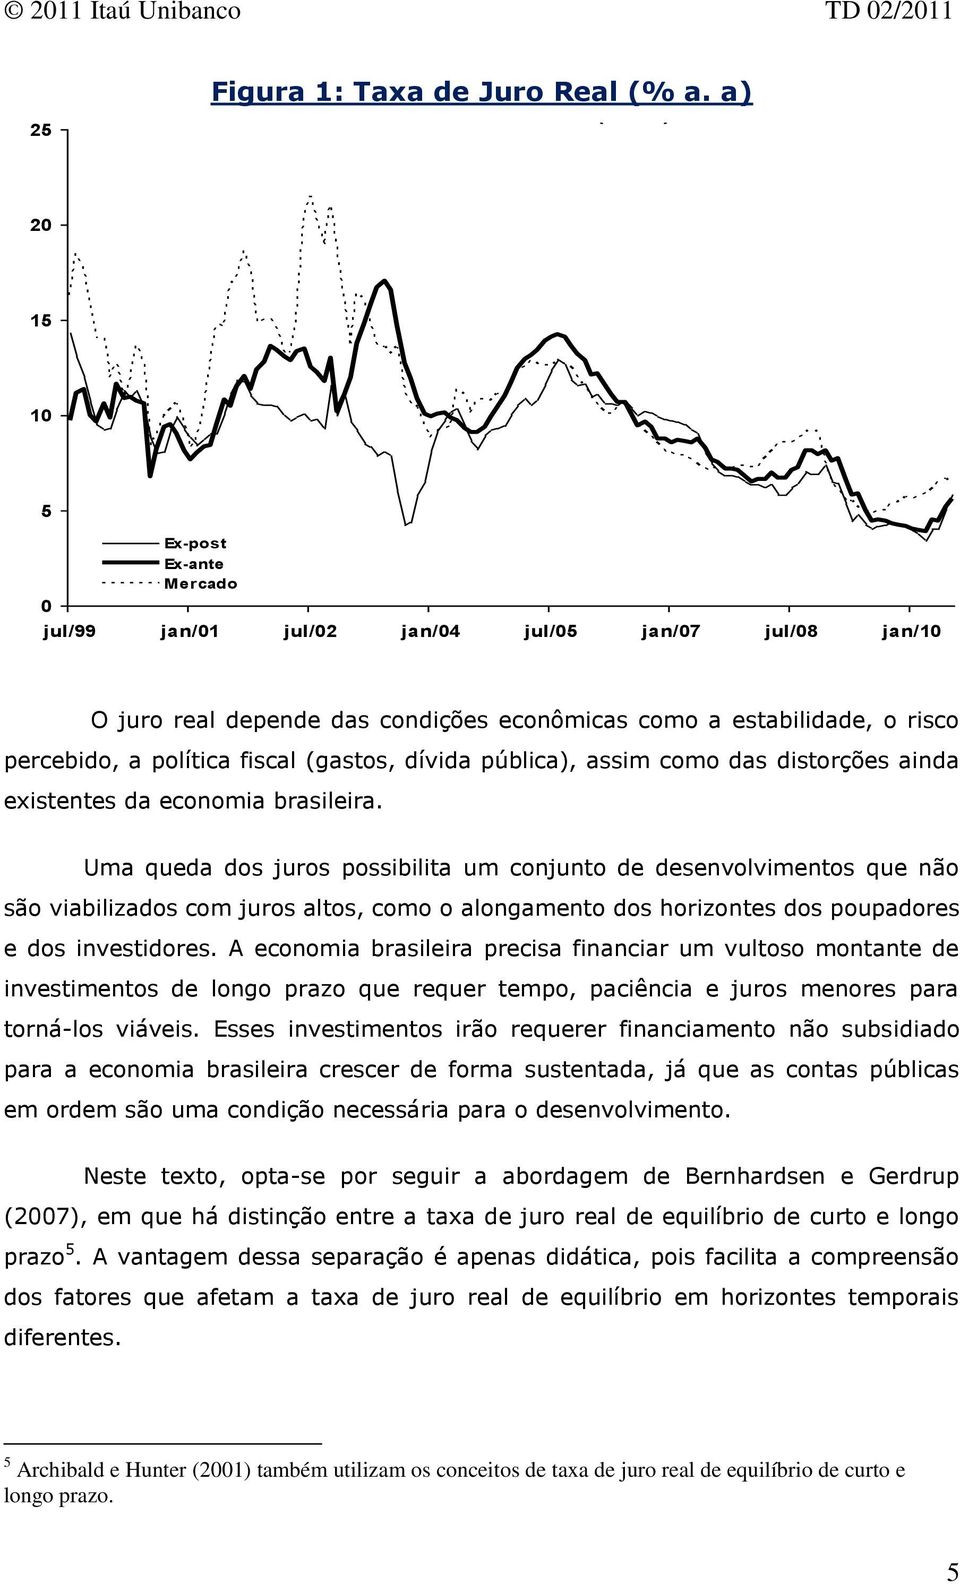 percebido, a políica fiscal (gasos, dívida pública), assim como das disorções ainda exisenes da economia brasileira.